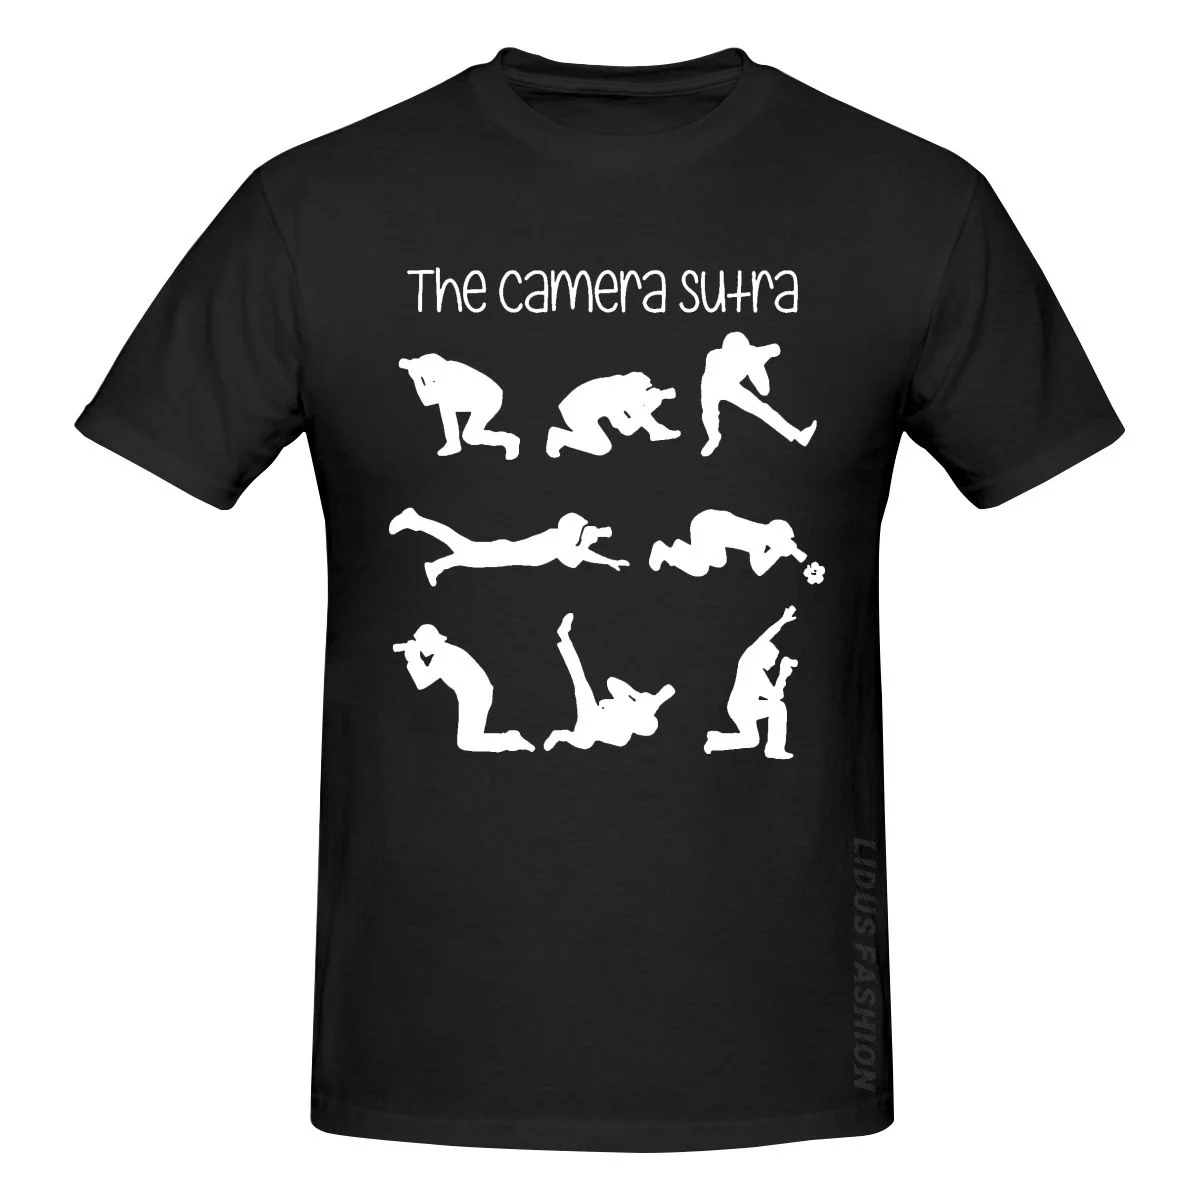 

Забавный фотографический дизайн камеры сутра, идея для подарка, футболка, одежда, графическая футболка, толстовка с коротким рукавом, футбо...